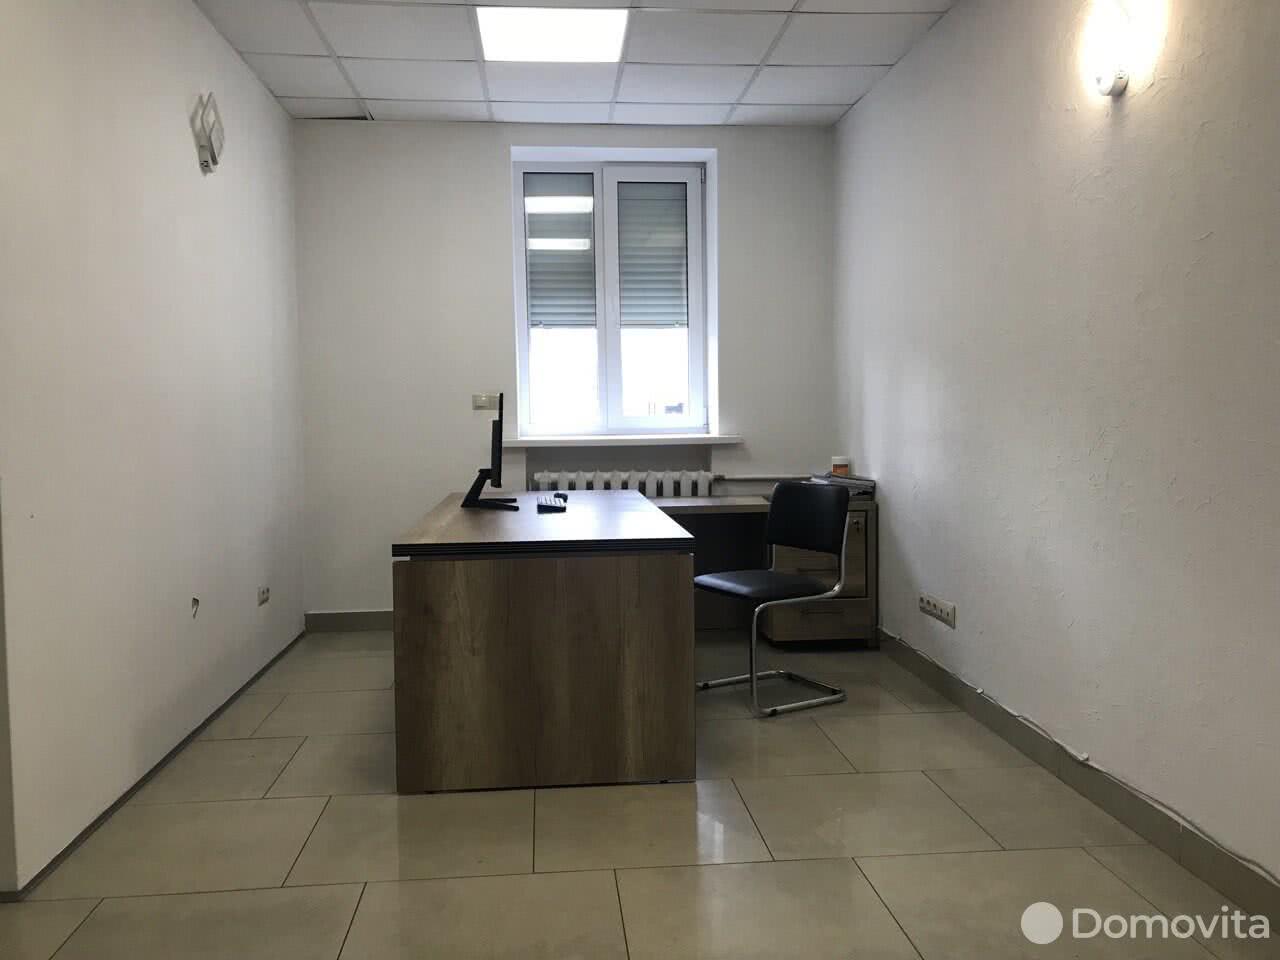 Снять офис на ул. Веры Хоружей, д. 5 в Минске, 1200BYN, код 11663 - фото 1